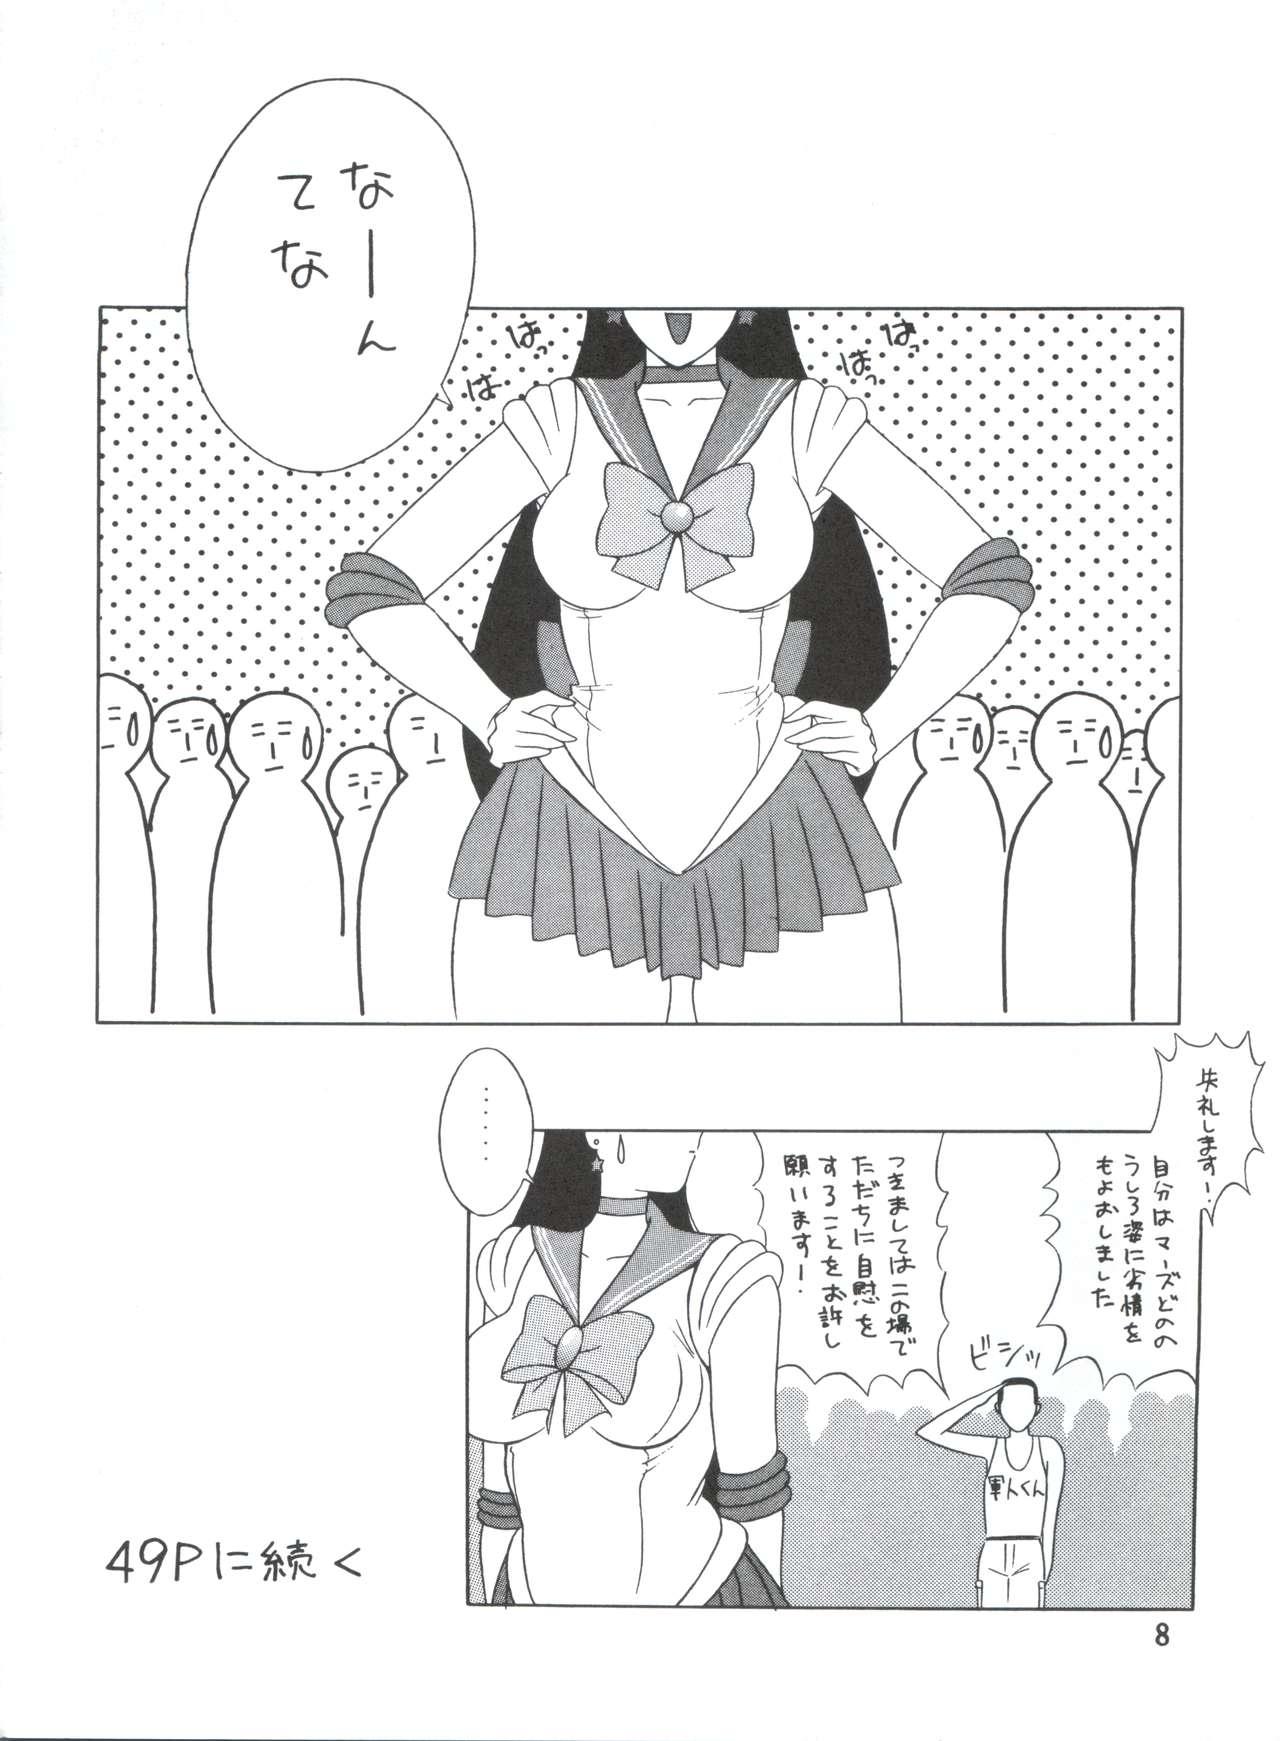 Redbone Voice of Mars - Sailor moon Urusei yatsura Dirty pair Maison ikkoku Orgasmus - Page 7